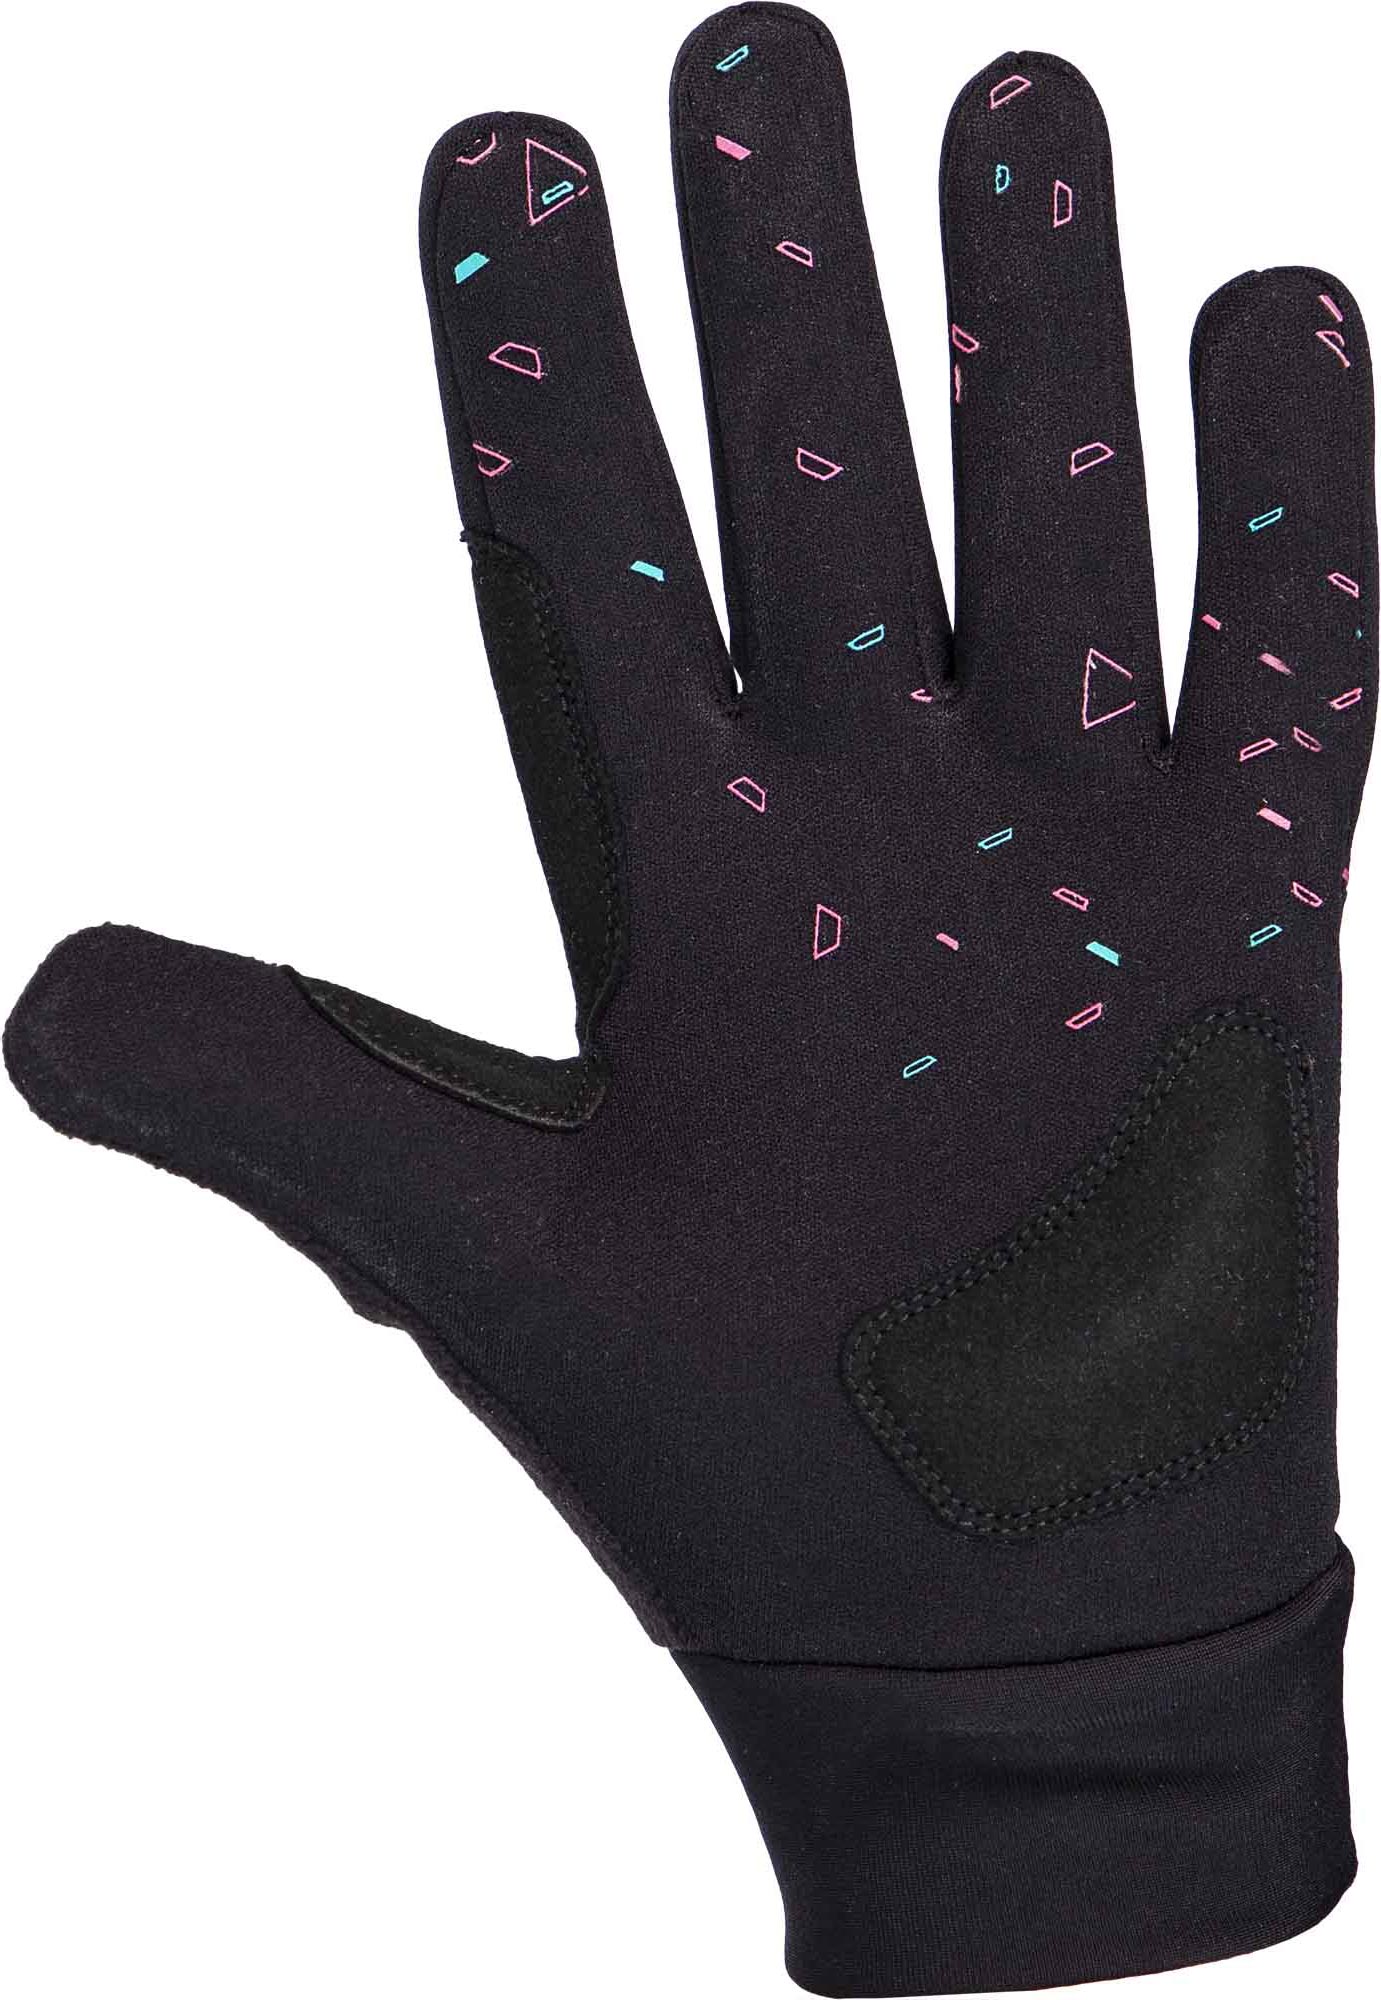 Kids’ winter gloves